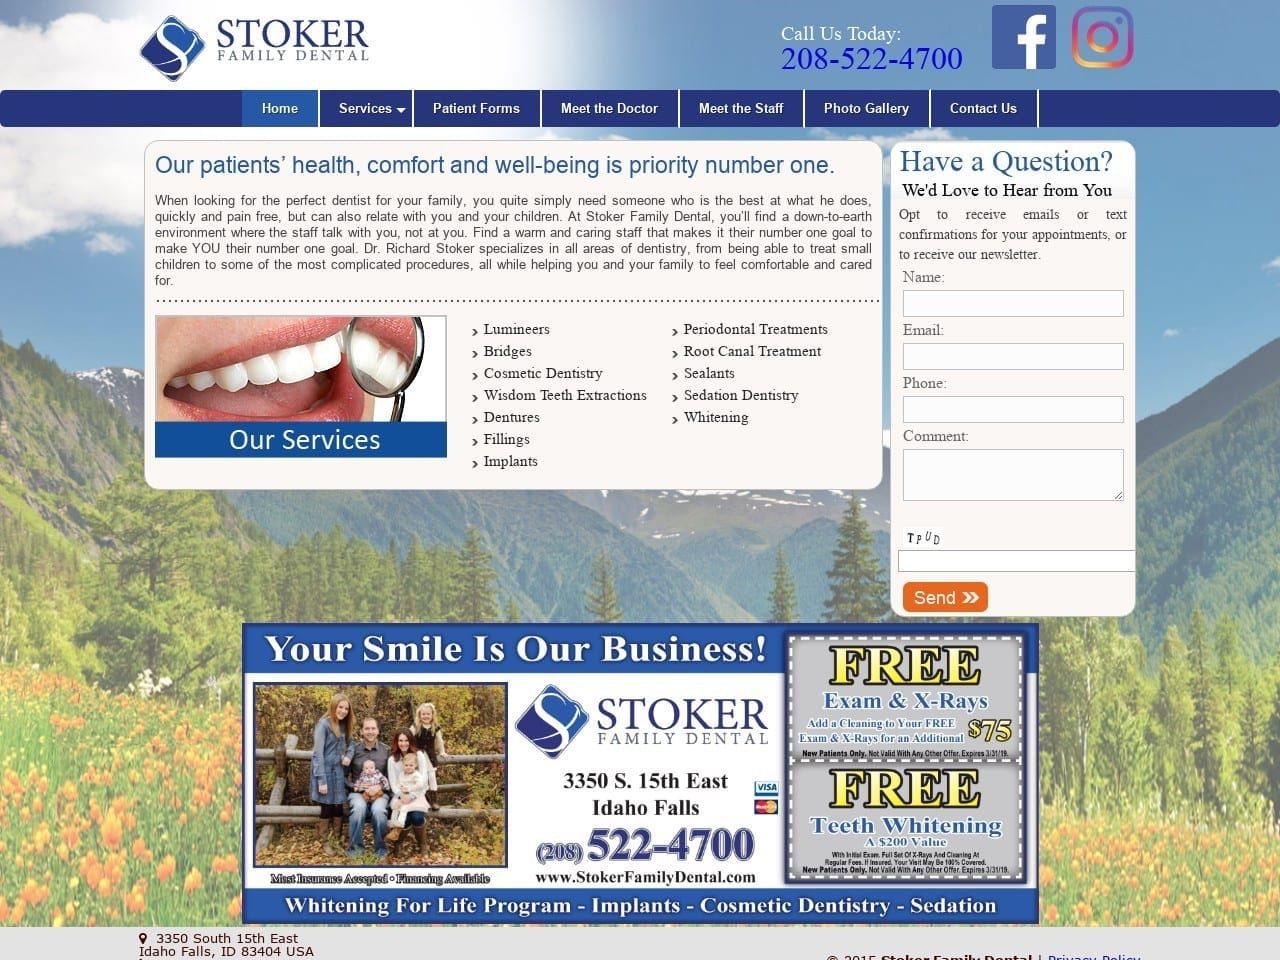 Stoker Family Dental Website Screenshot from stokerfamilydental.com